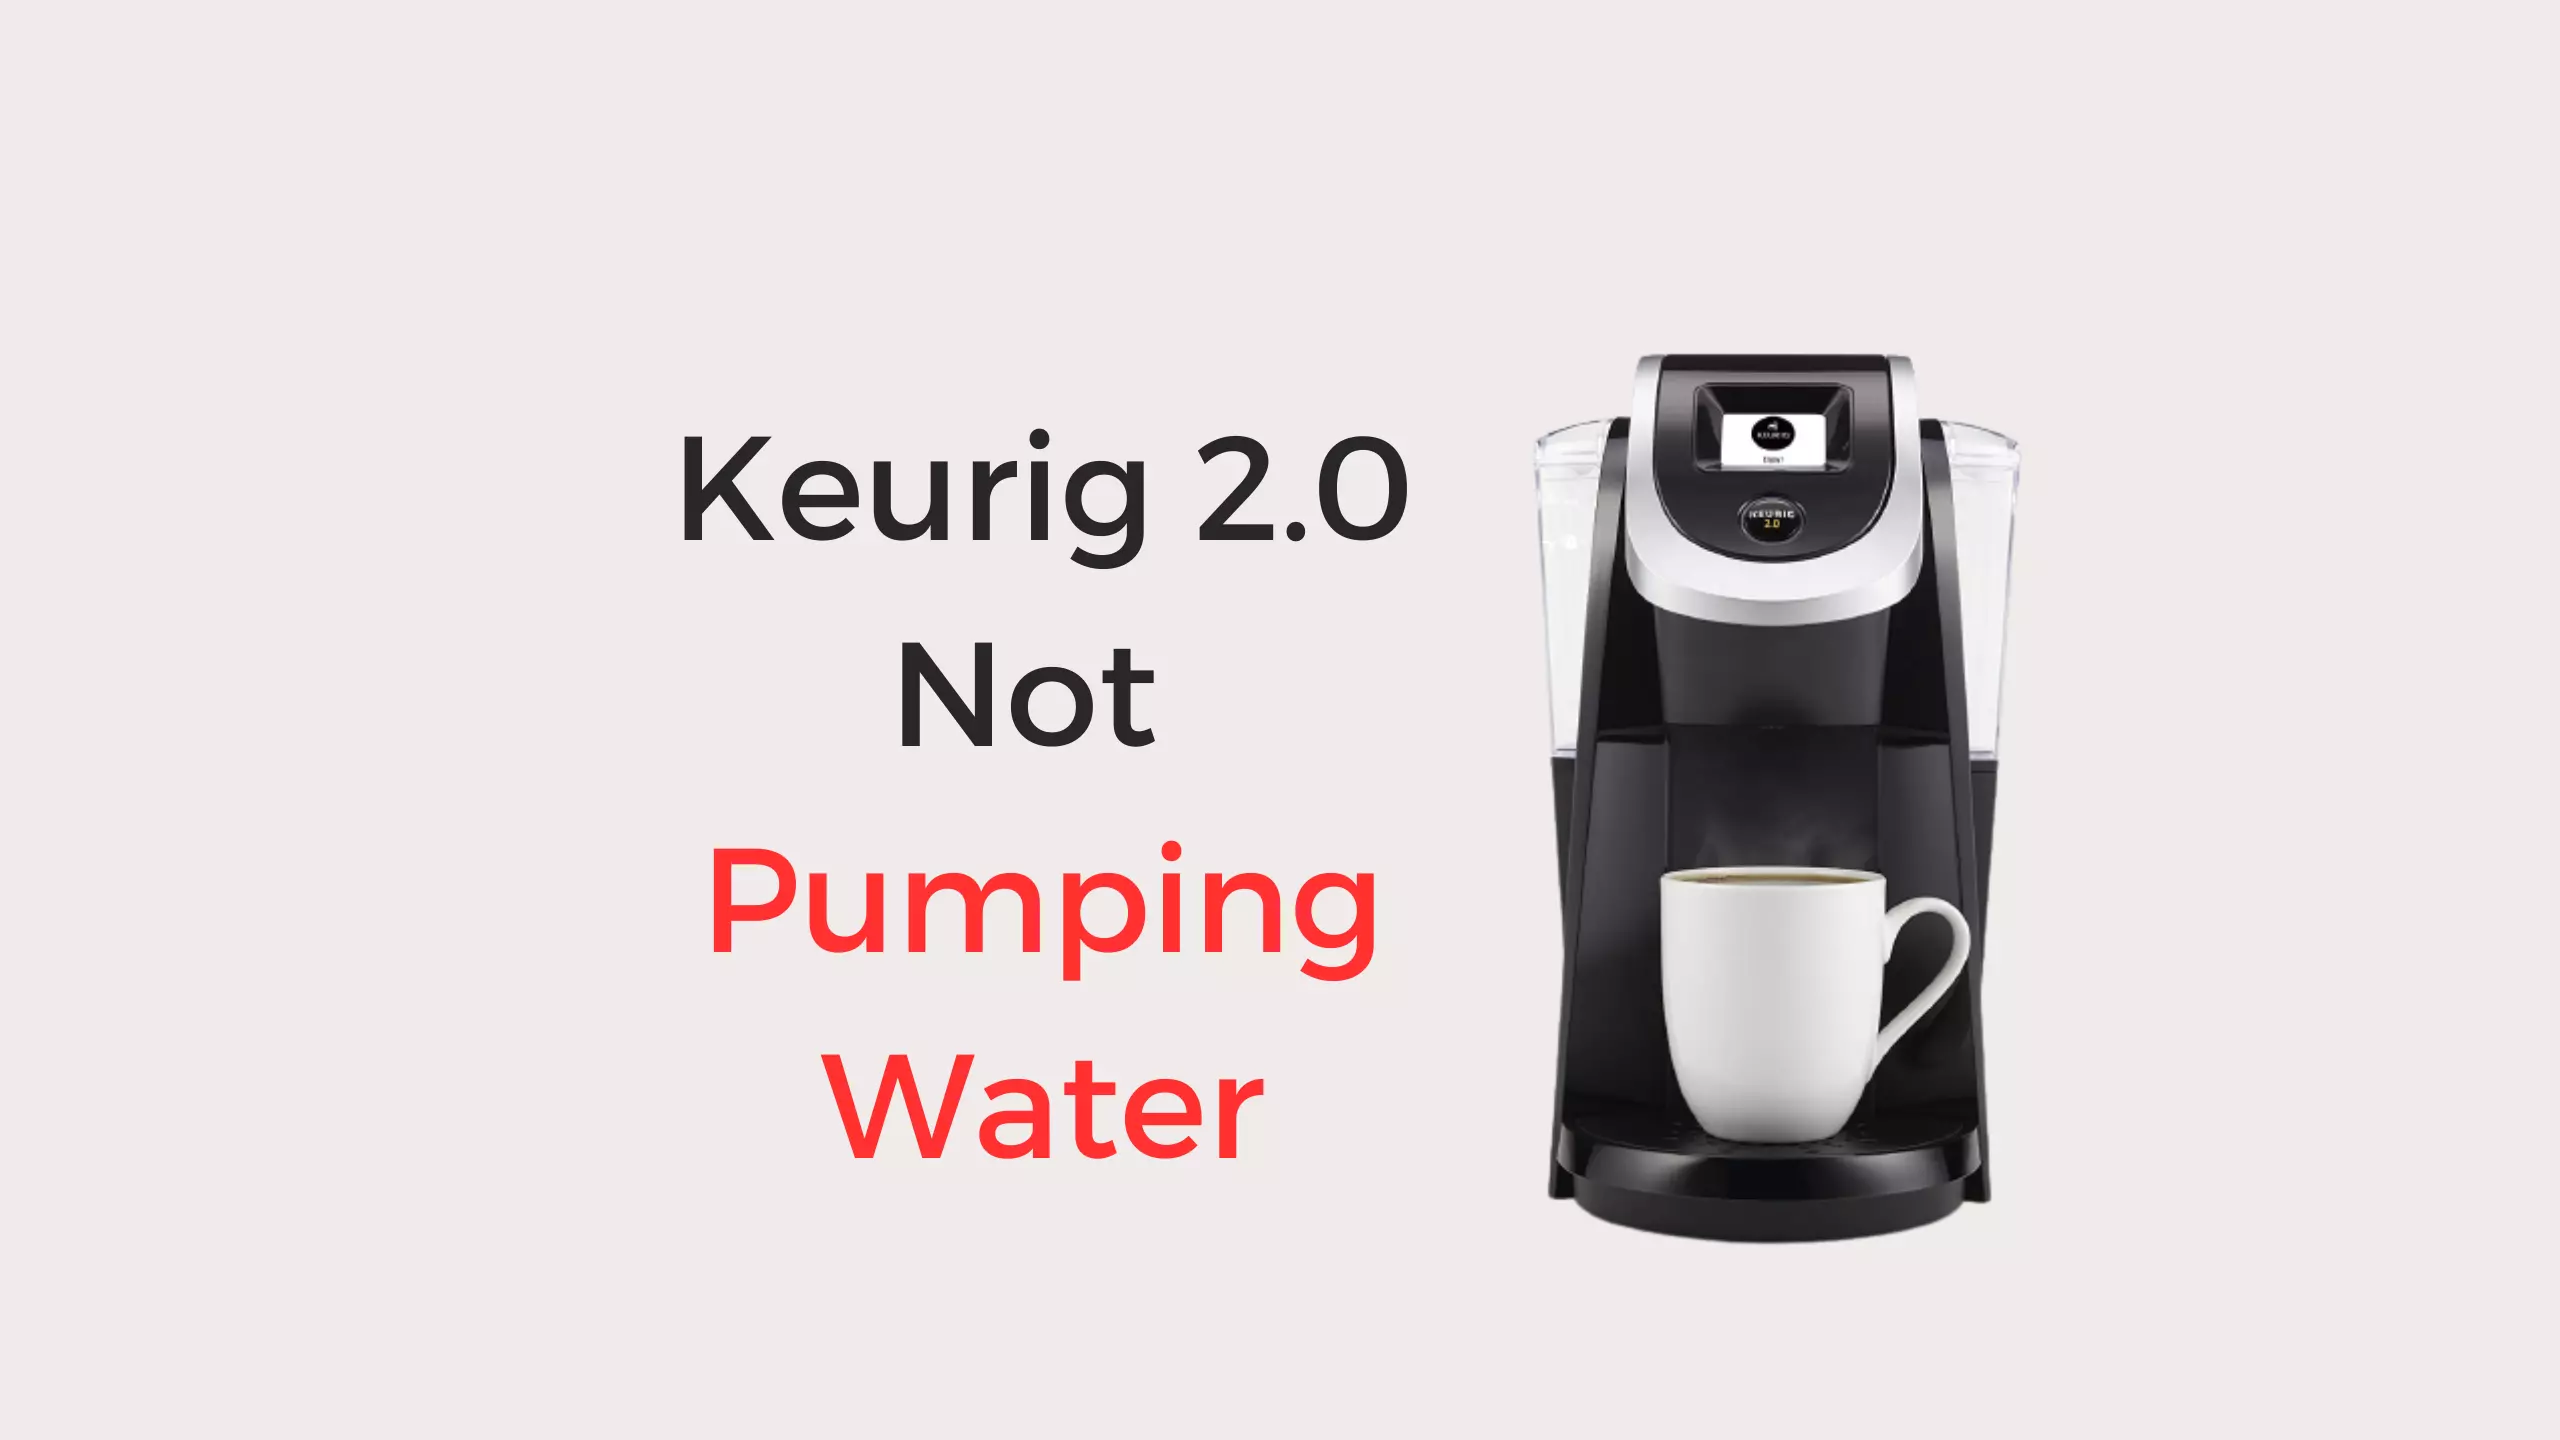 keurig 2.0 not pumping water